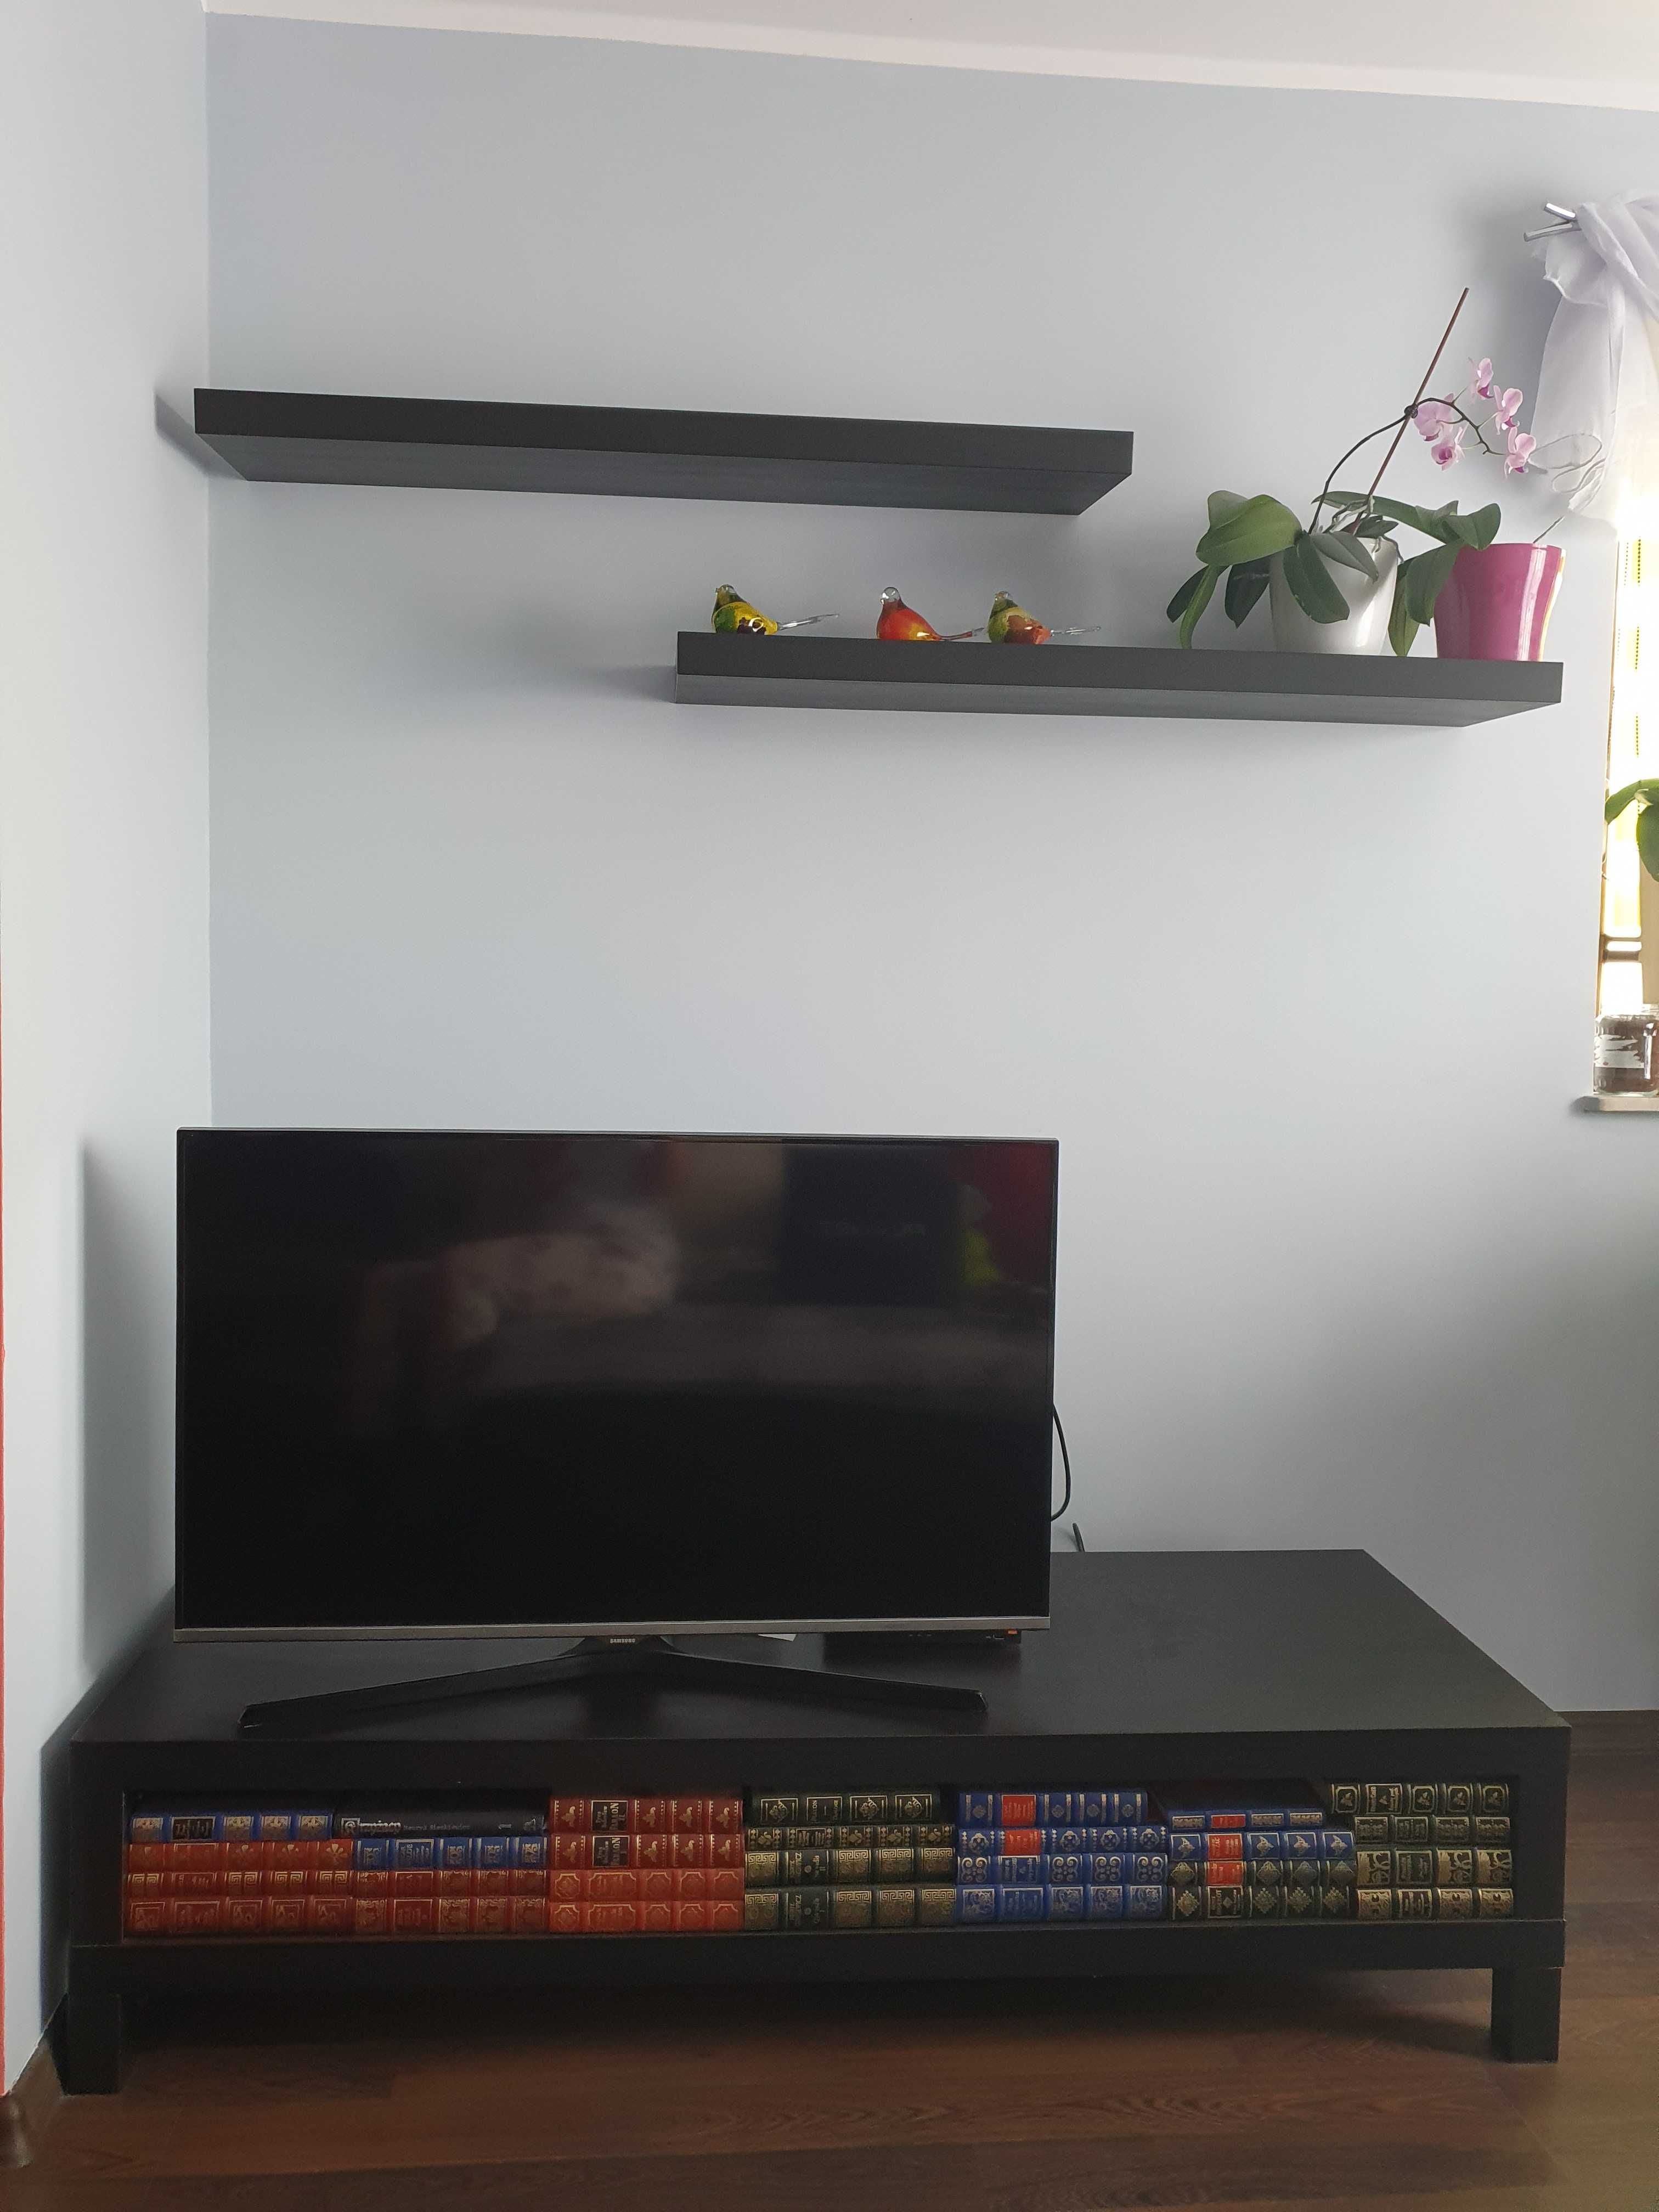 Wyposazenie pokoju z TV, kolor czarny i czerwony